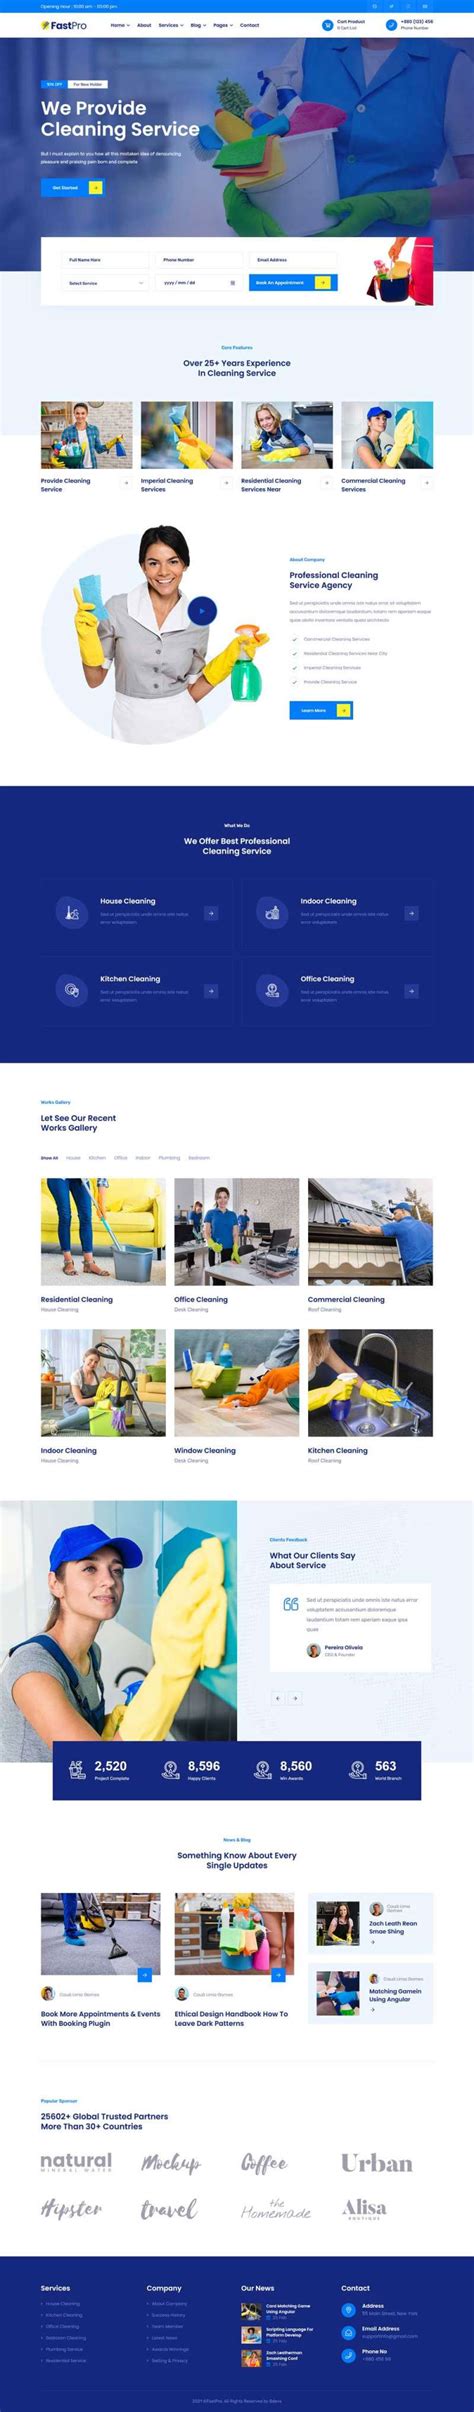 蓝色大气html5响应式家政保洁服务公司网站模板 - 素材火